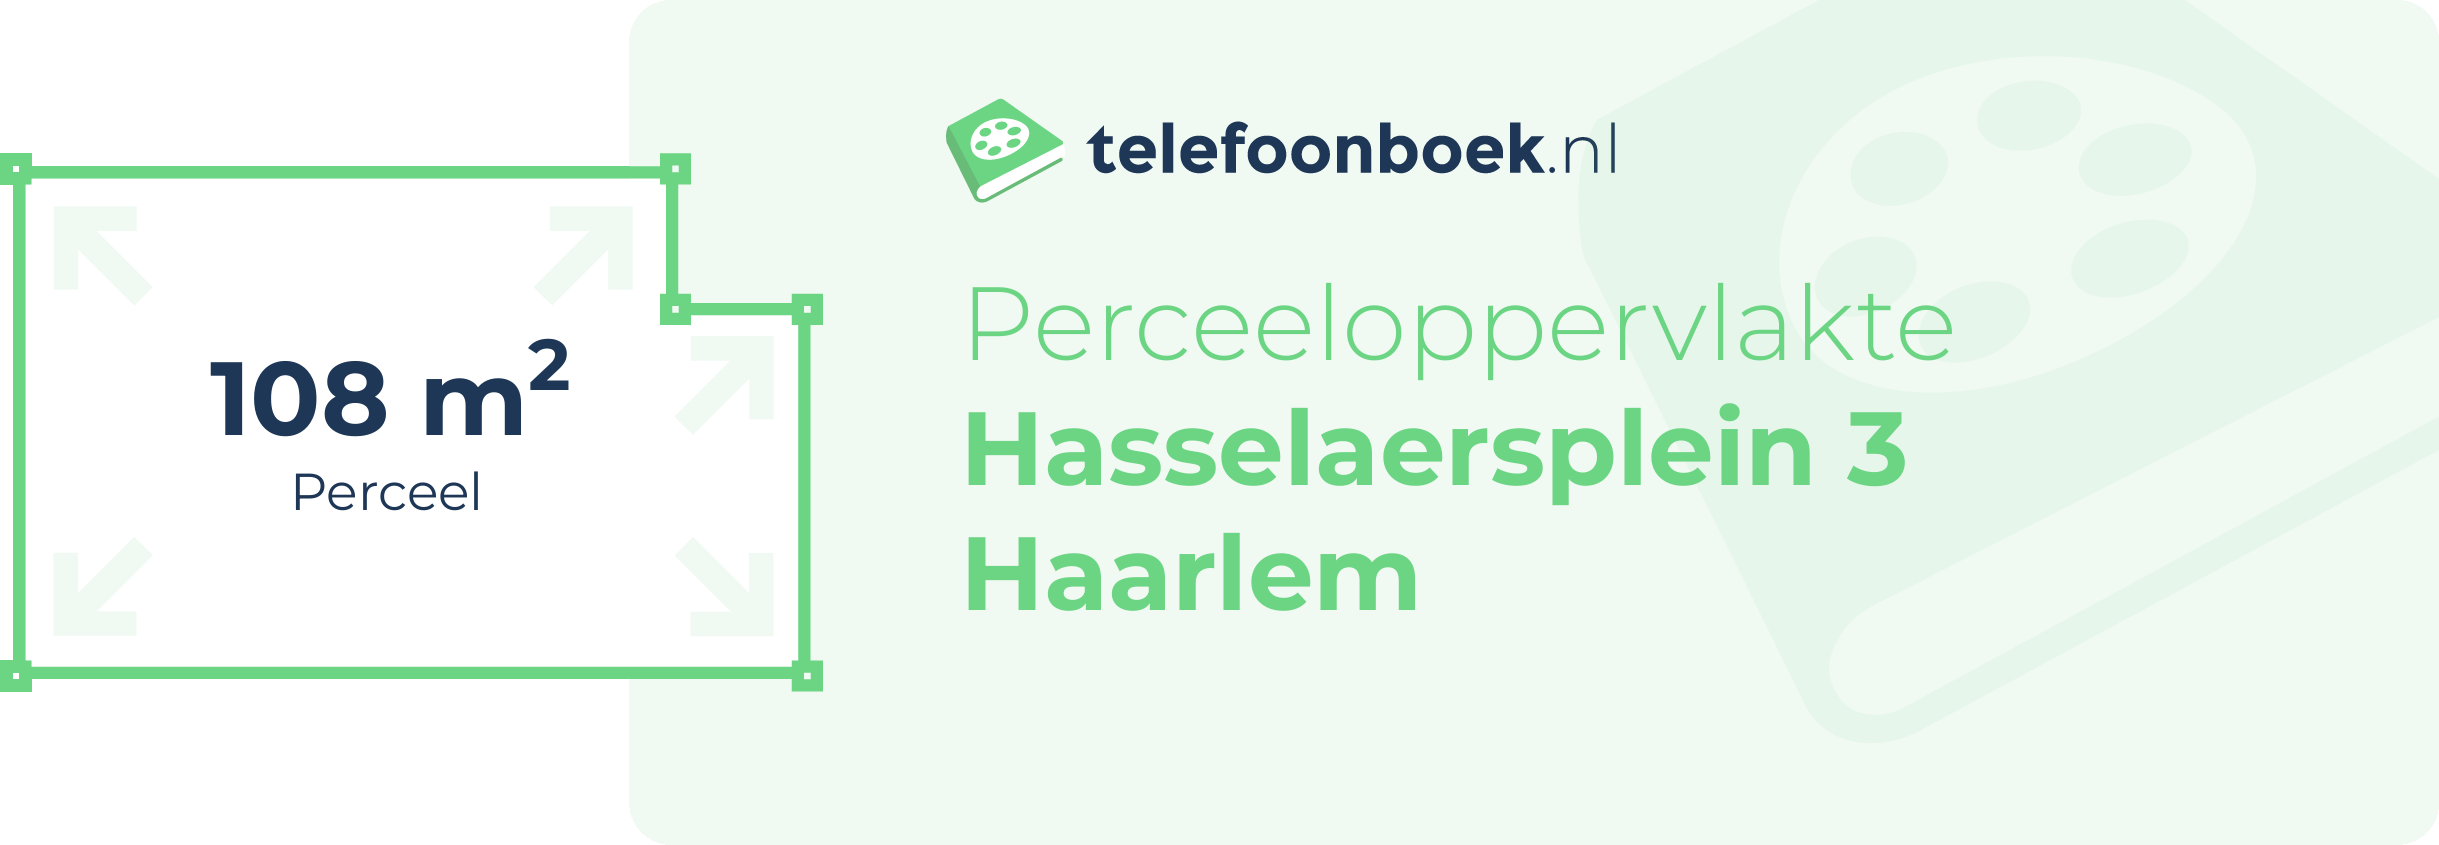 Perceeloppervlakte Hasselaersplein 3 Haarlem